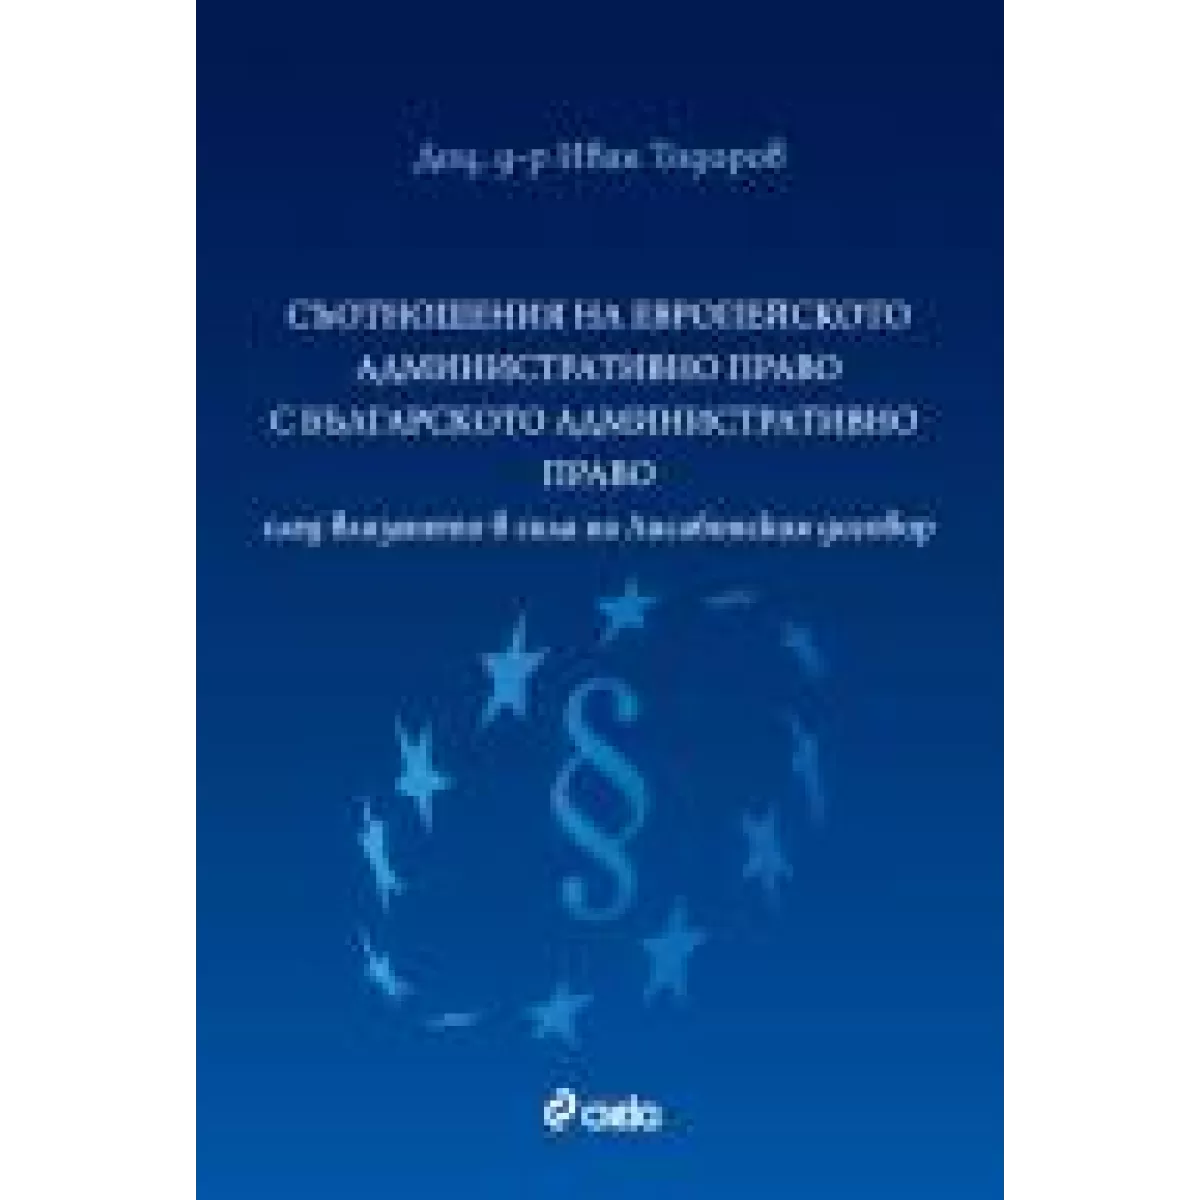 Съотношения на европейското административно право с българското административно право